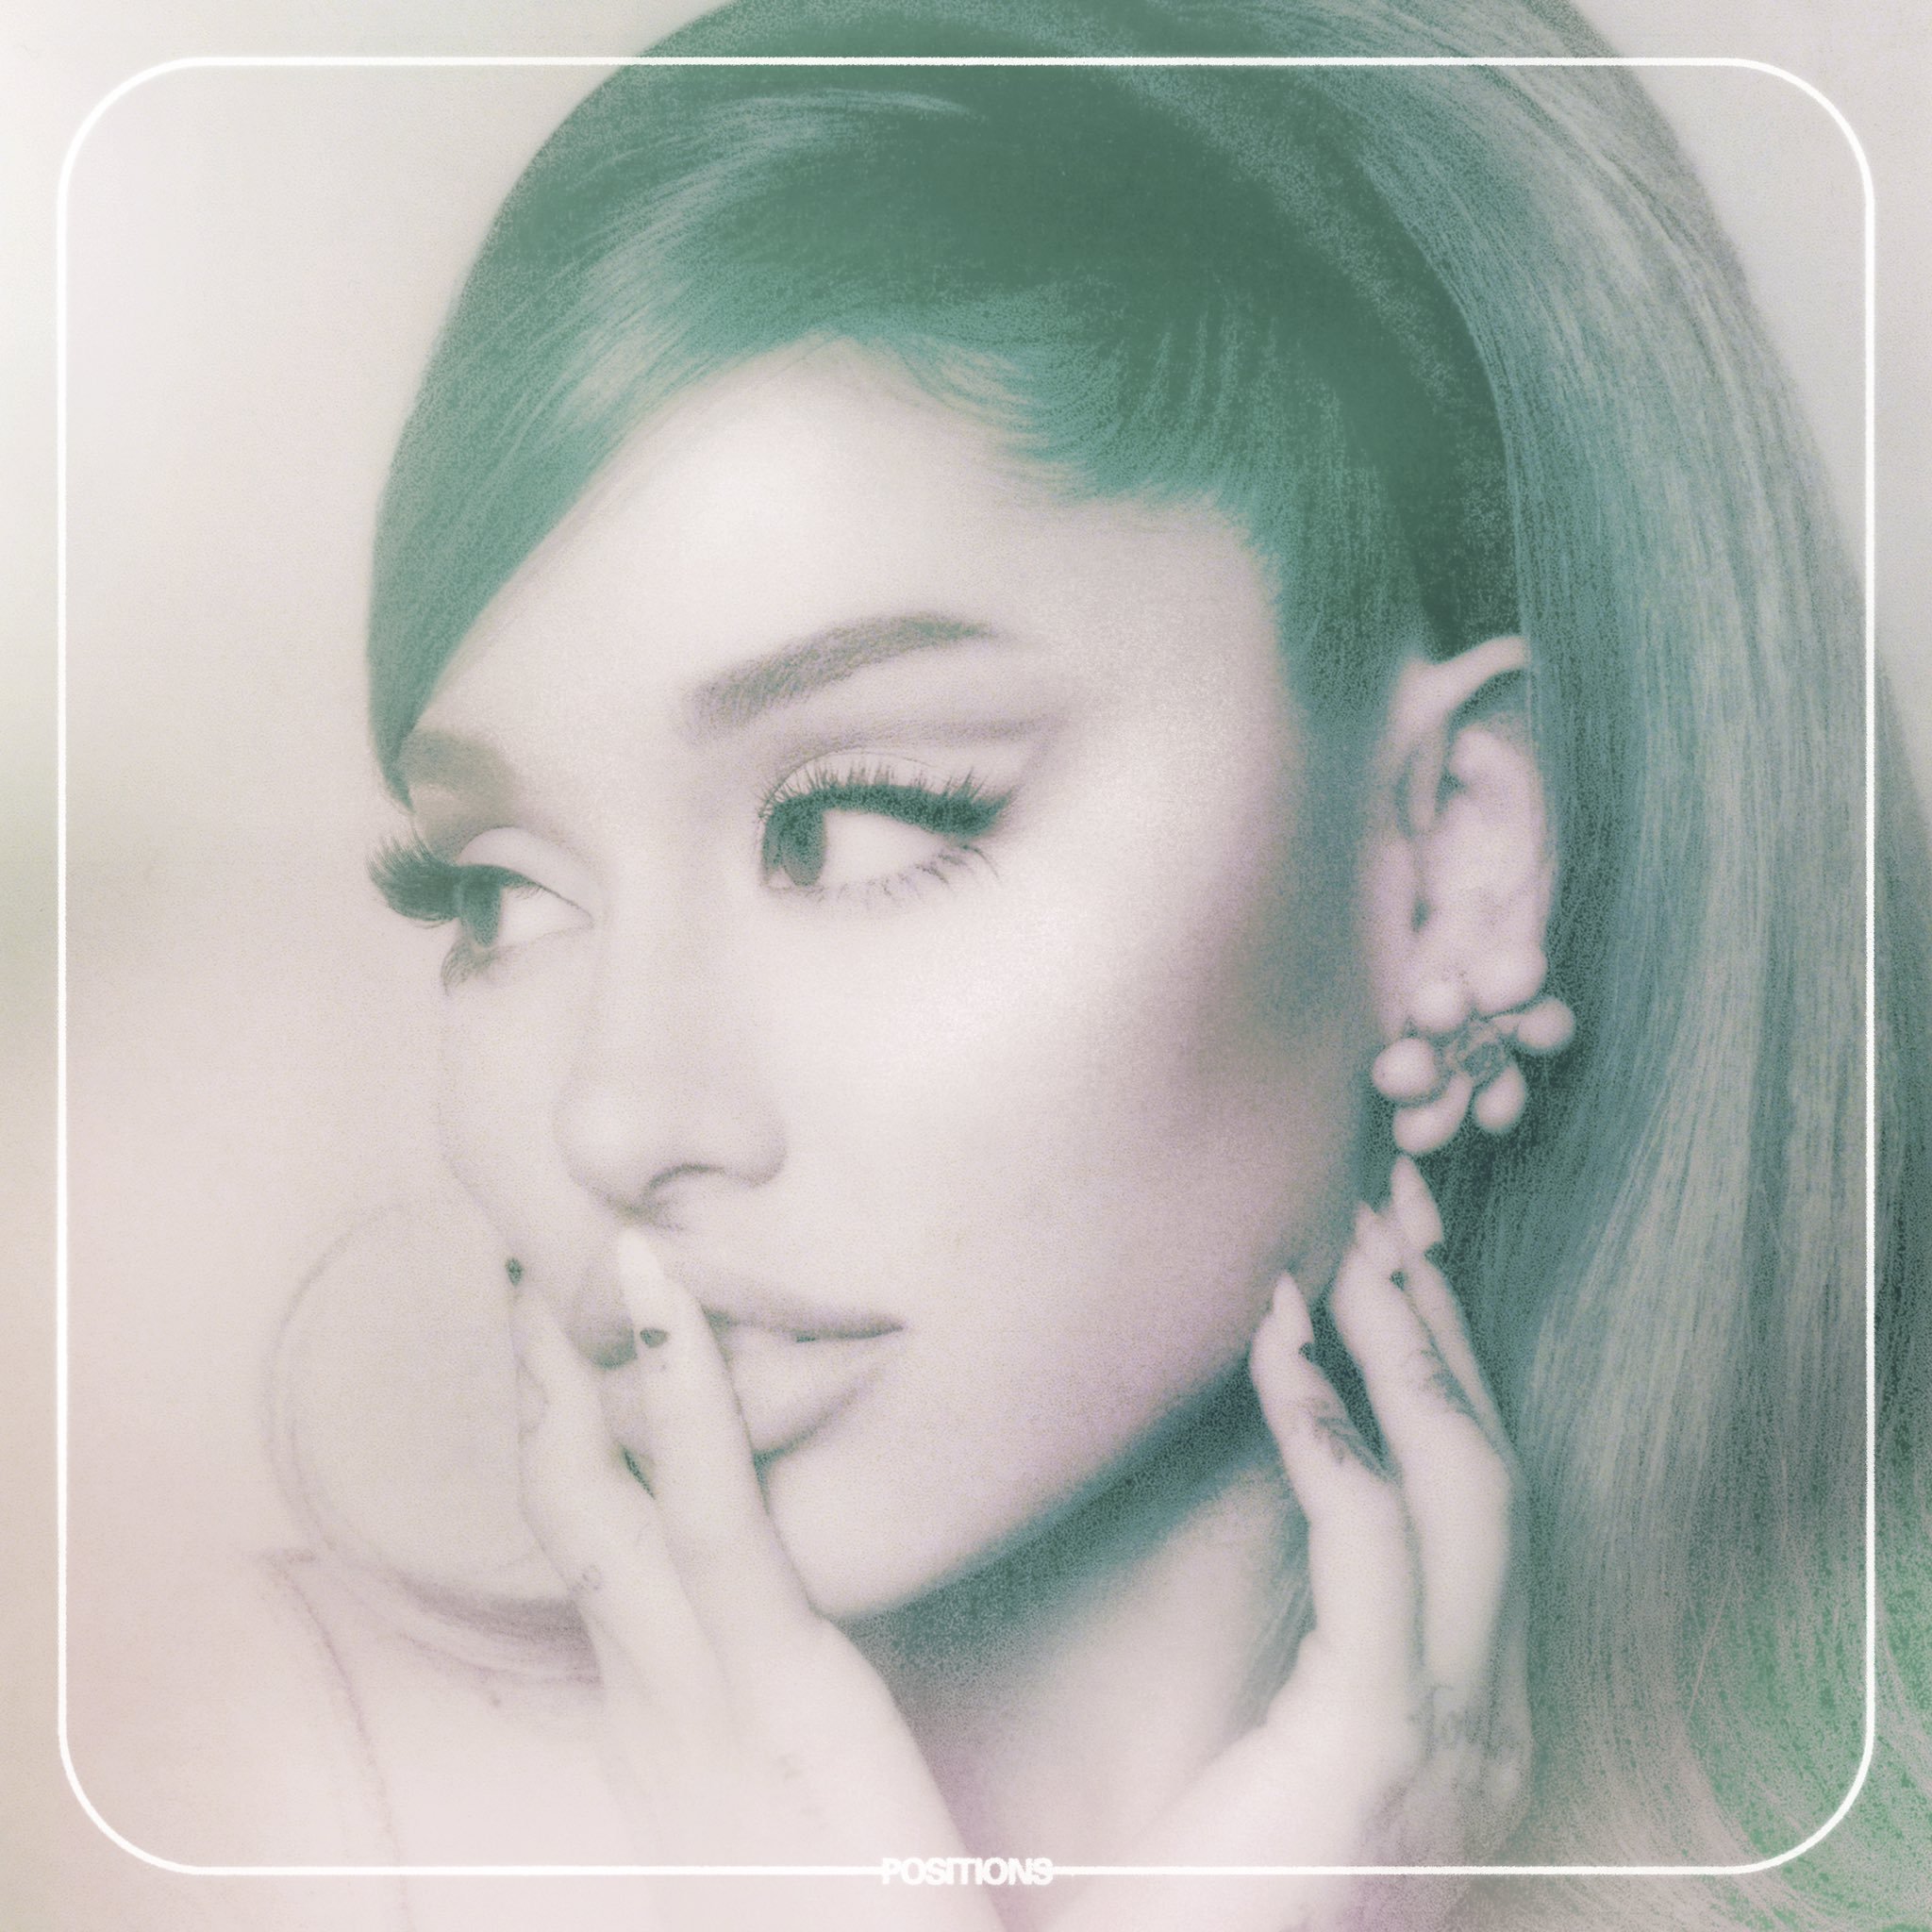 "Positions": veja as críticas sobre álbum da Ariana Grande